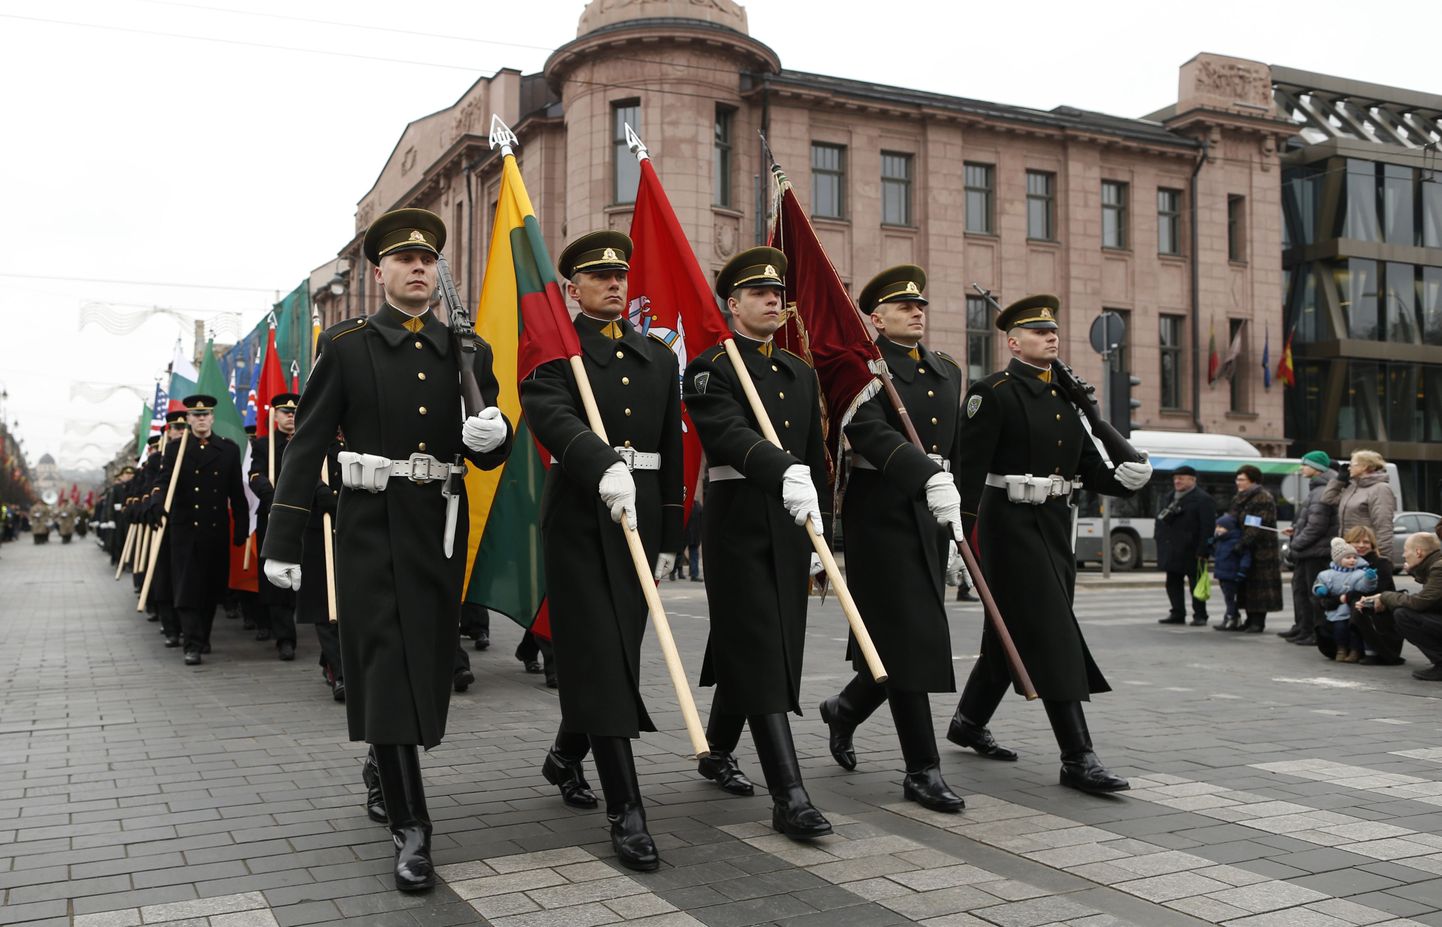 Leedu sõdurid iseseisvuspäeval.